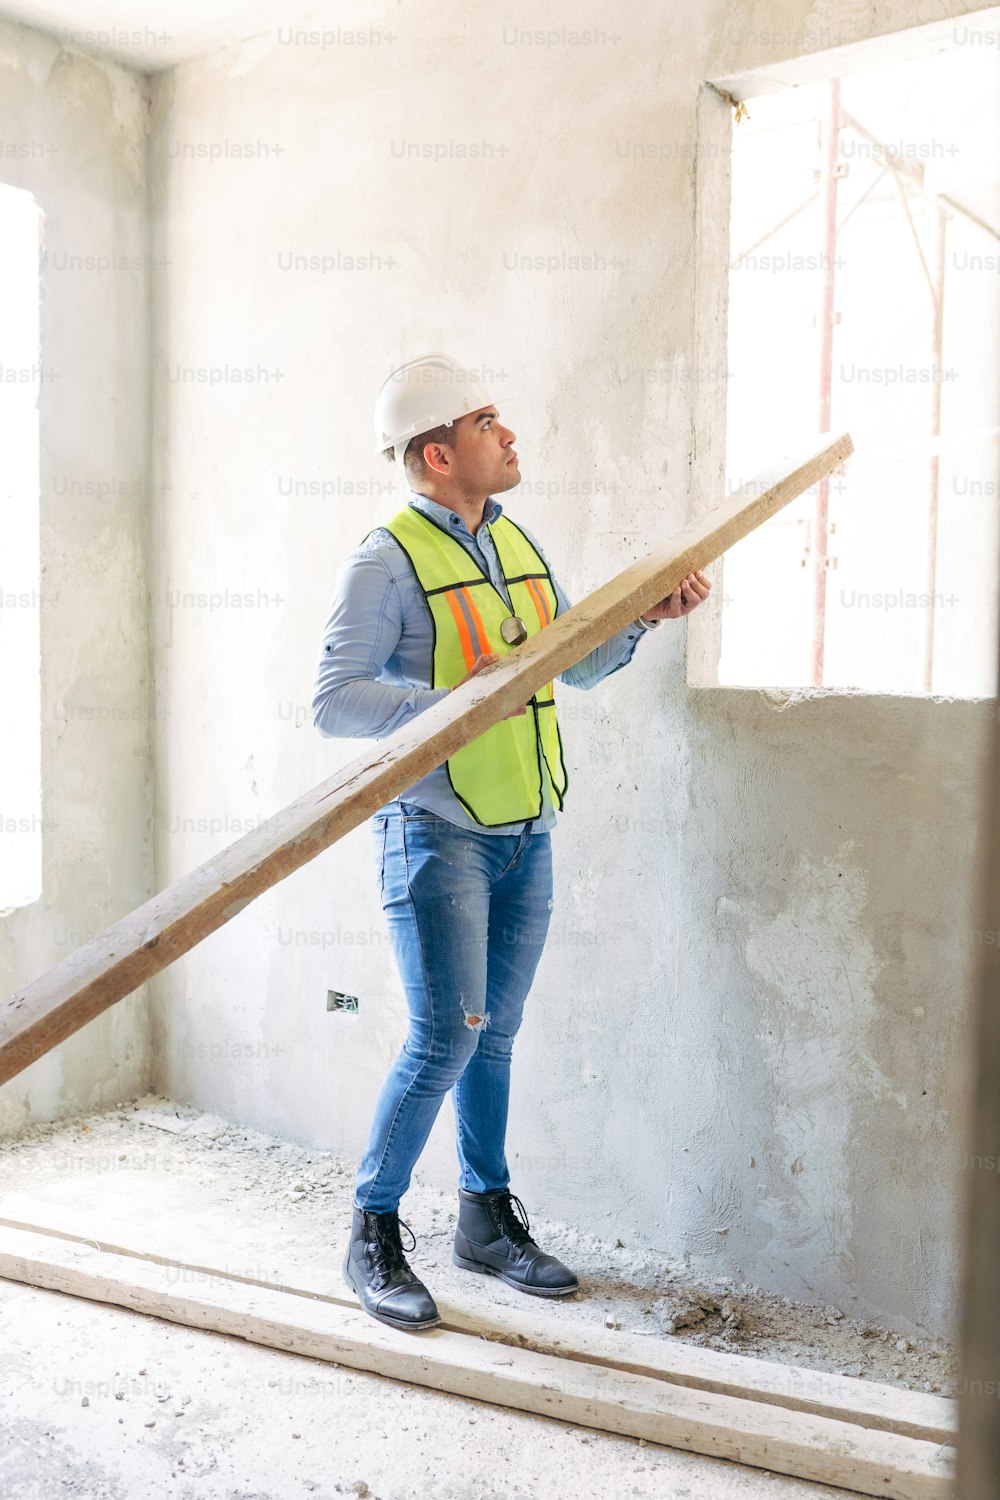 Un hombre con casco y chaleco de seguridad parado en una habitación en construcción